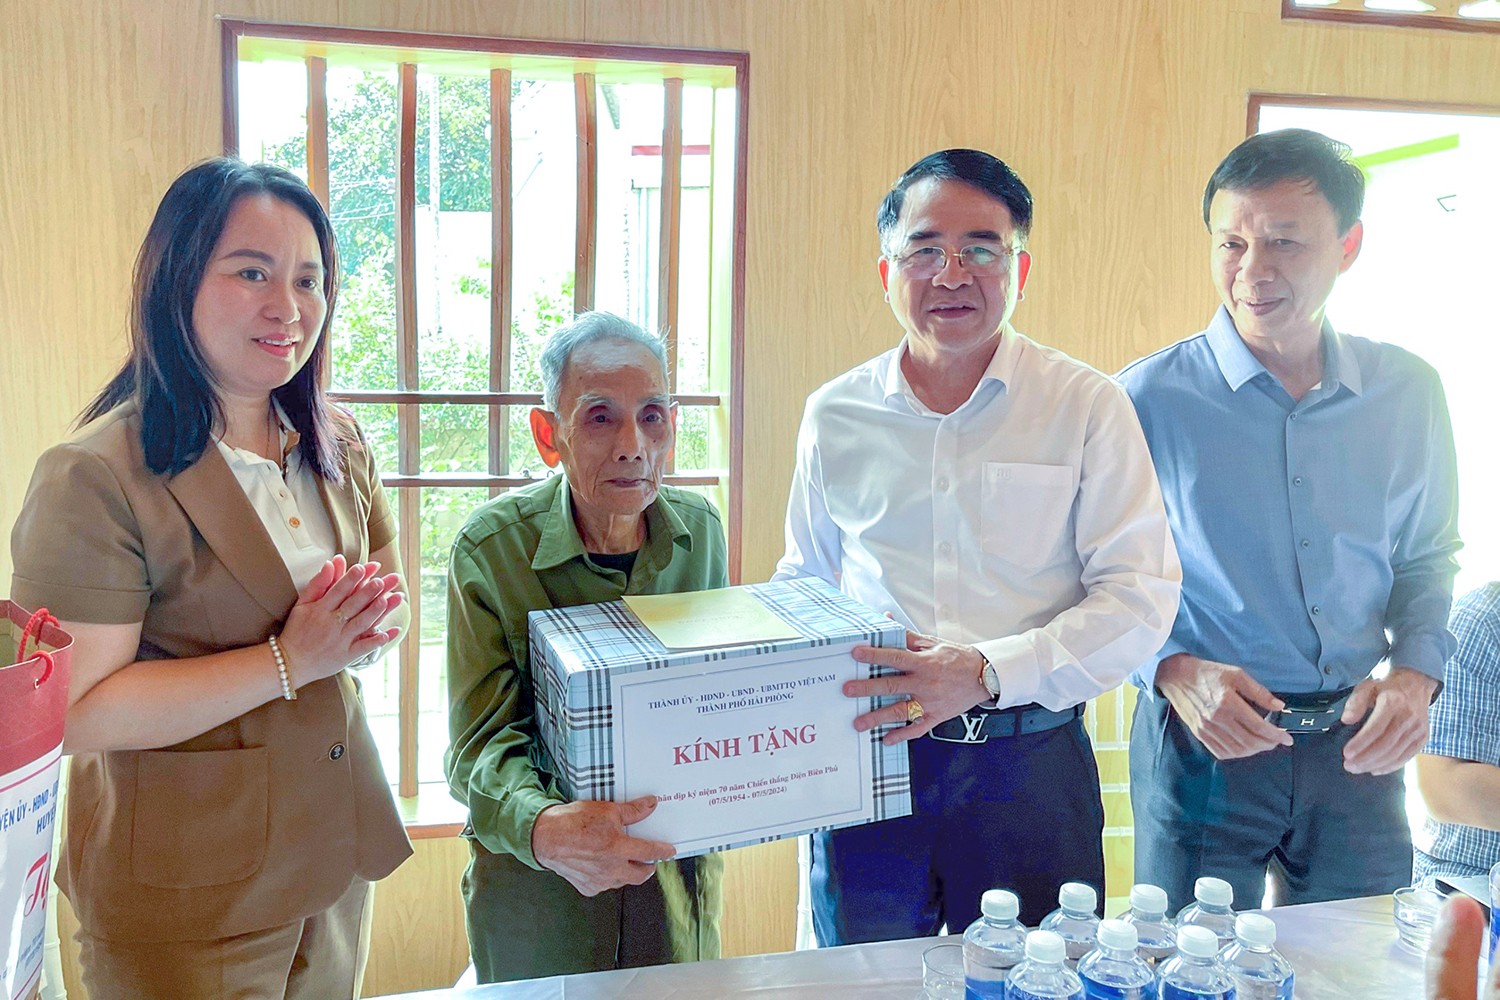 Chính sách - Hải Phòng: Dành 1,3 tỷ tặng quà thân nhân liệt sĩ, chiến sĩ Điện Biên